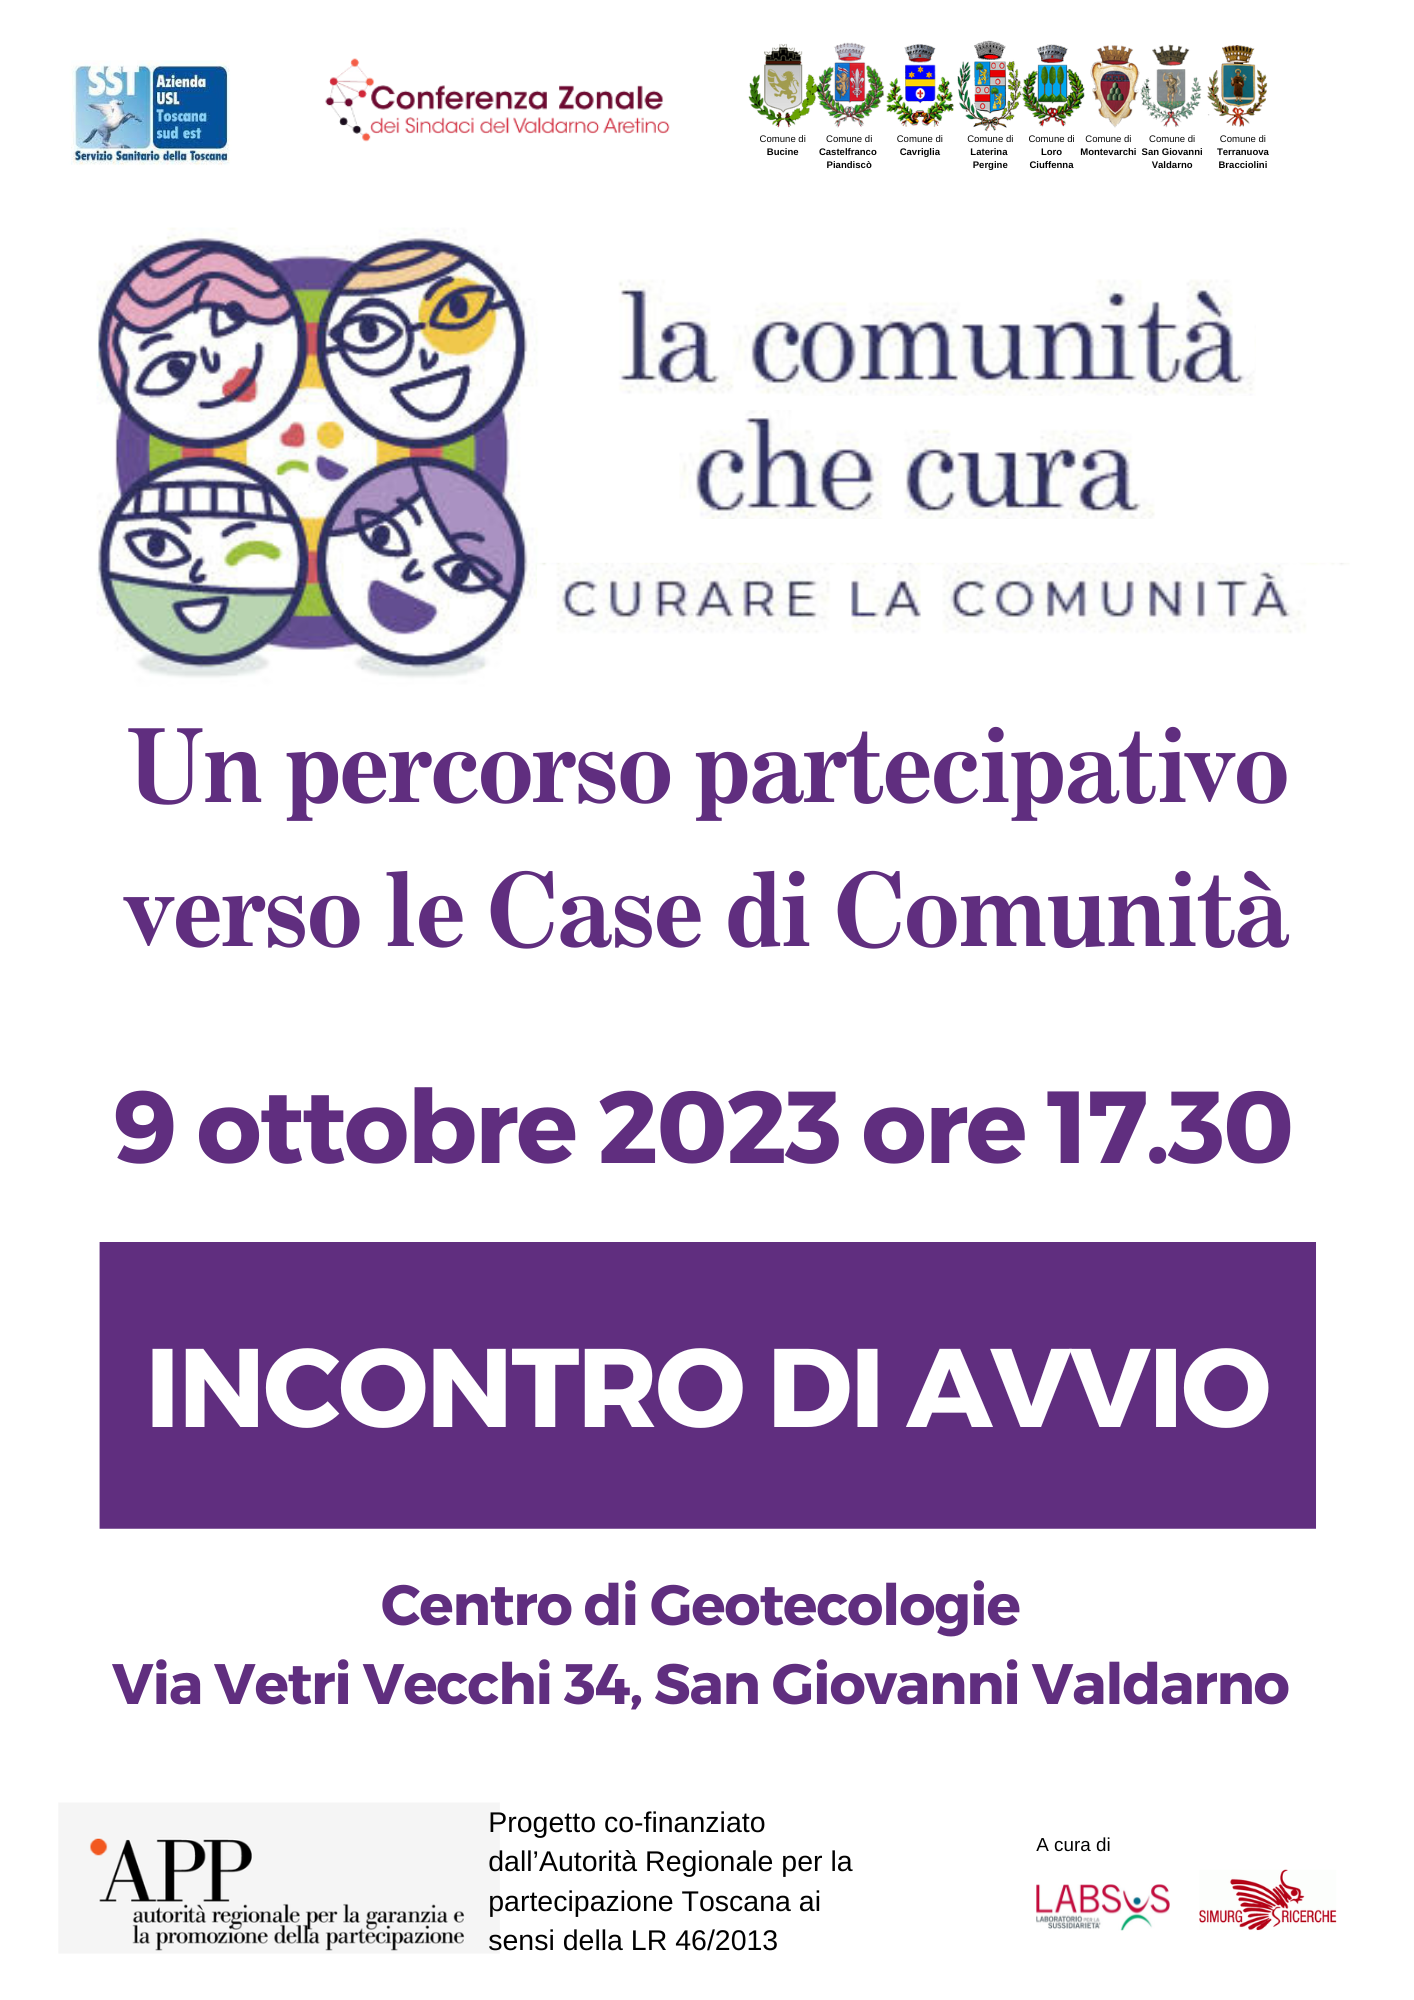 "La comunità che cura - Curare la comunità" - 09/10/2023